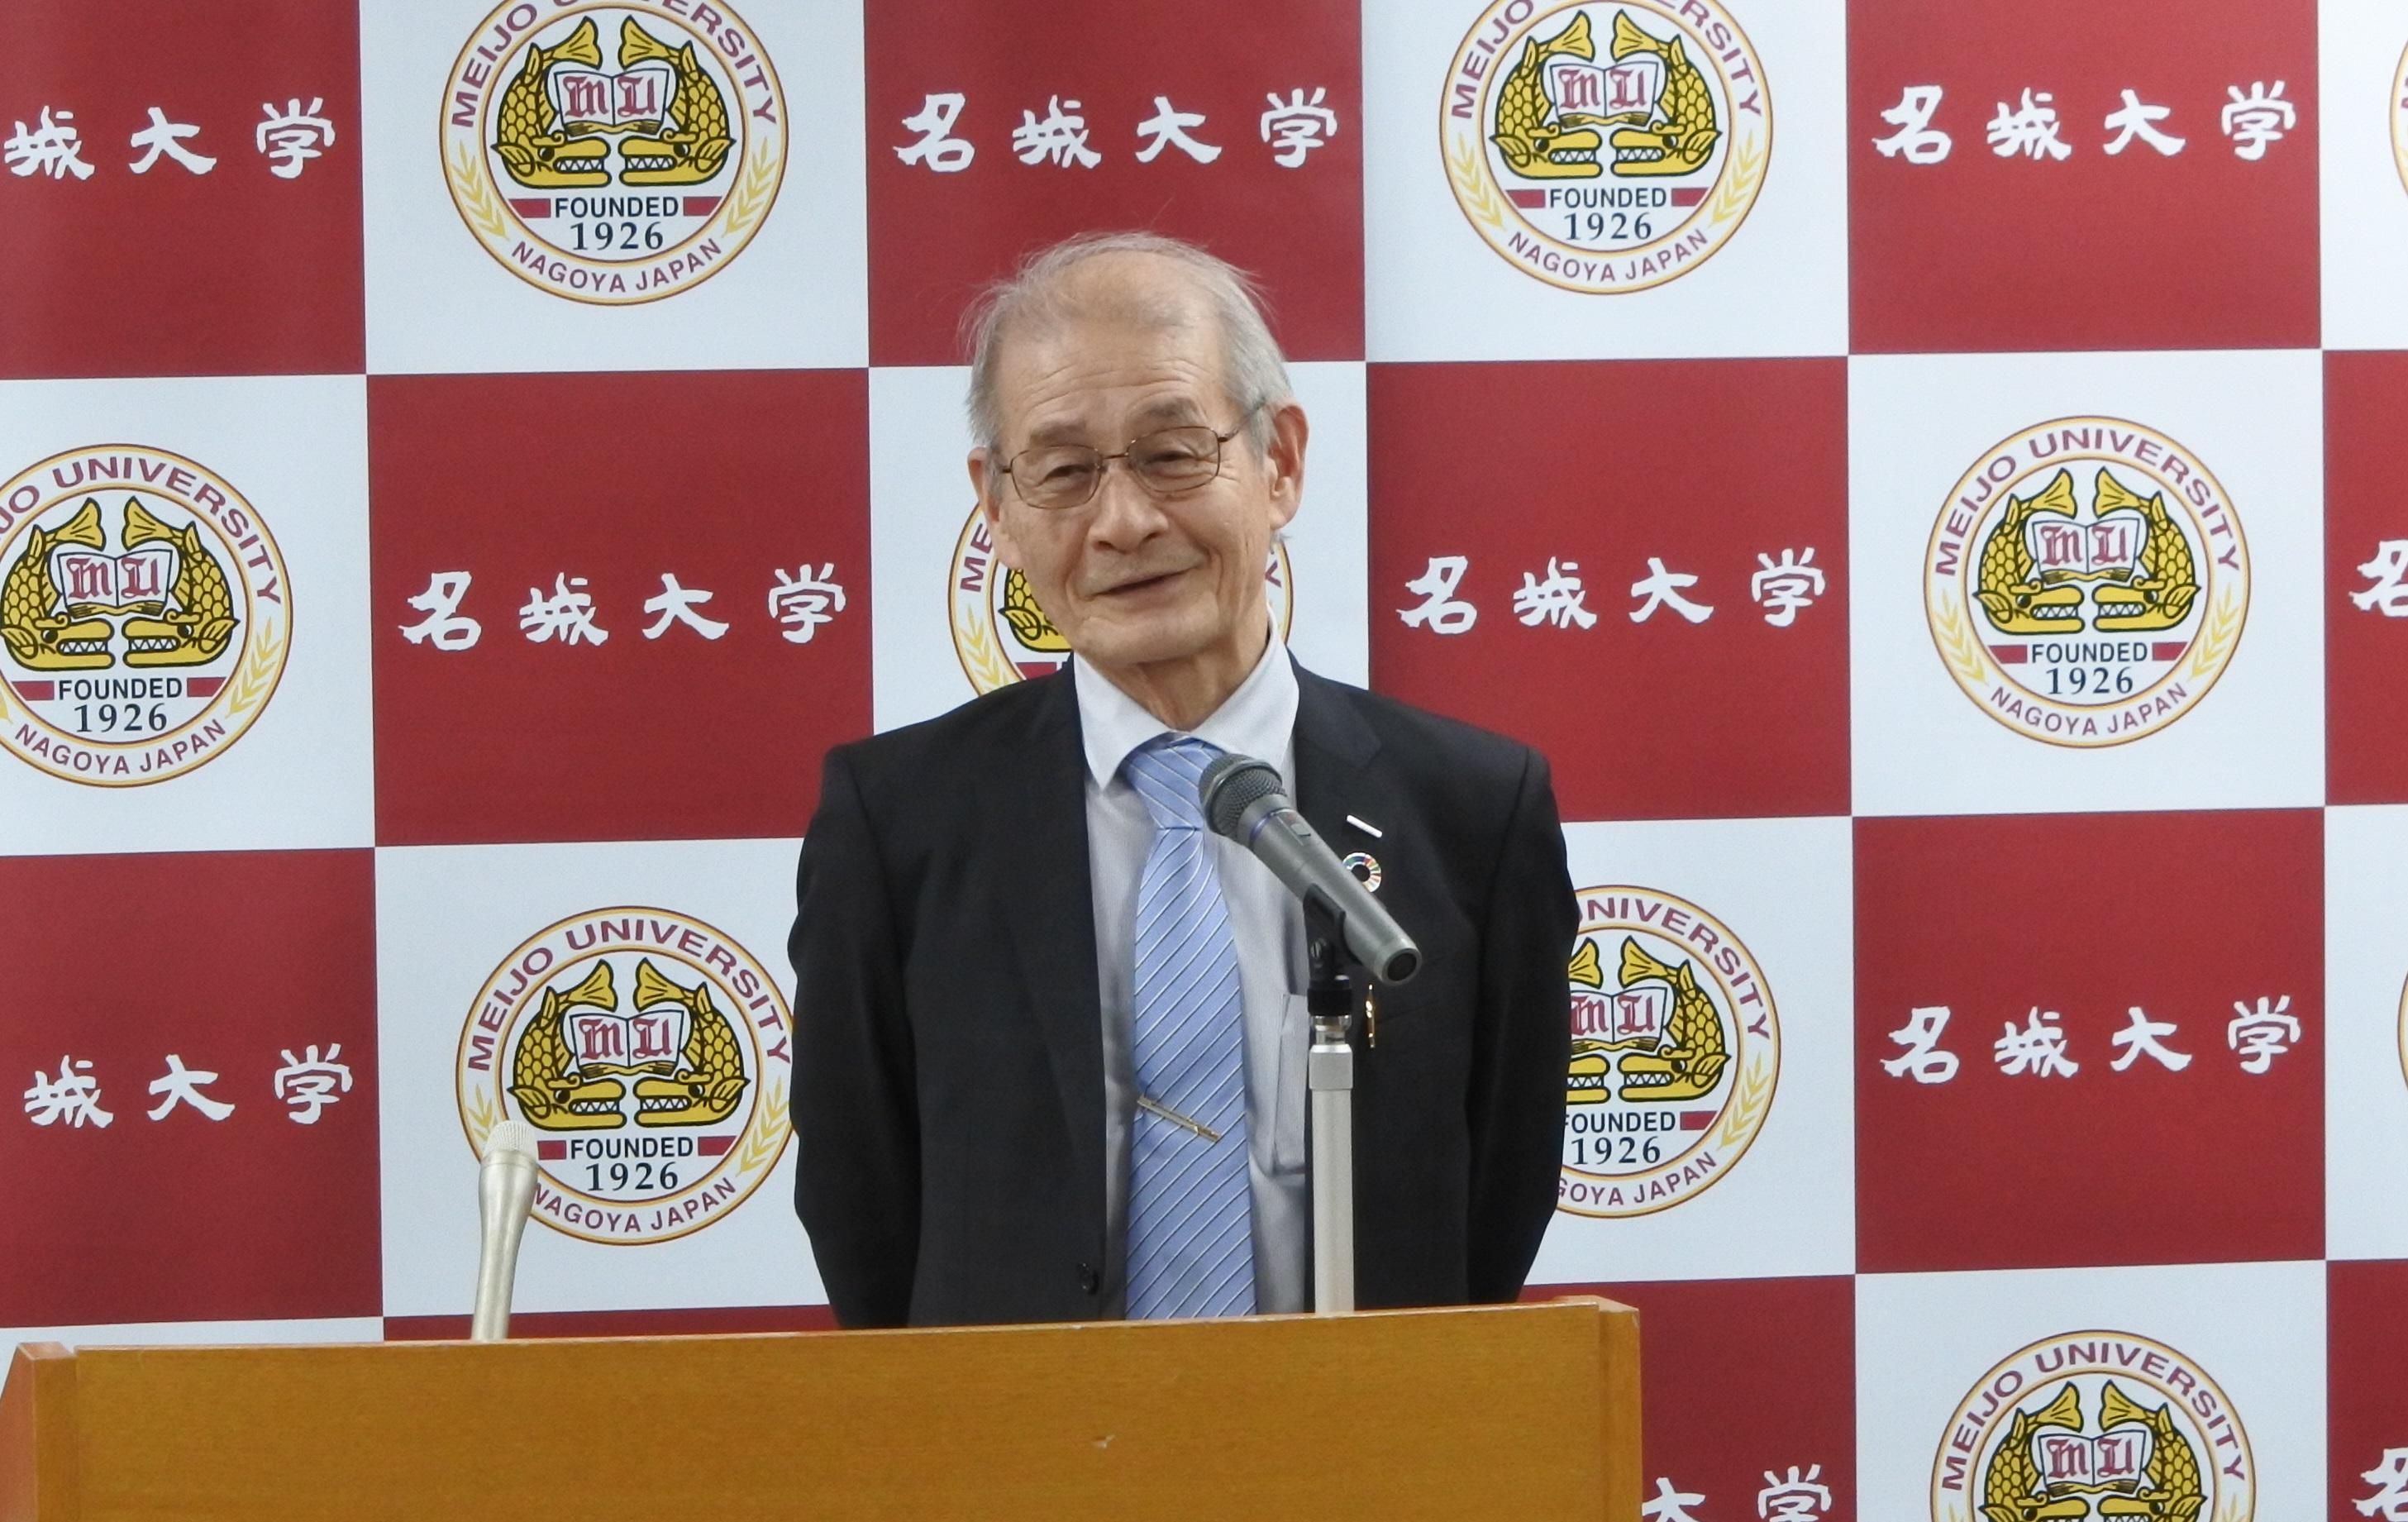 Dr. YOSHINO giving his thank-you speech